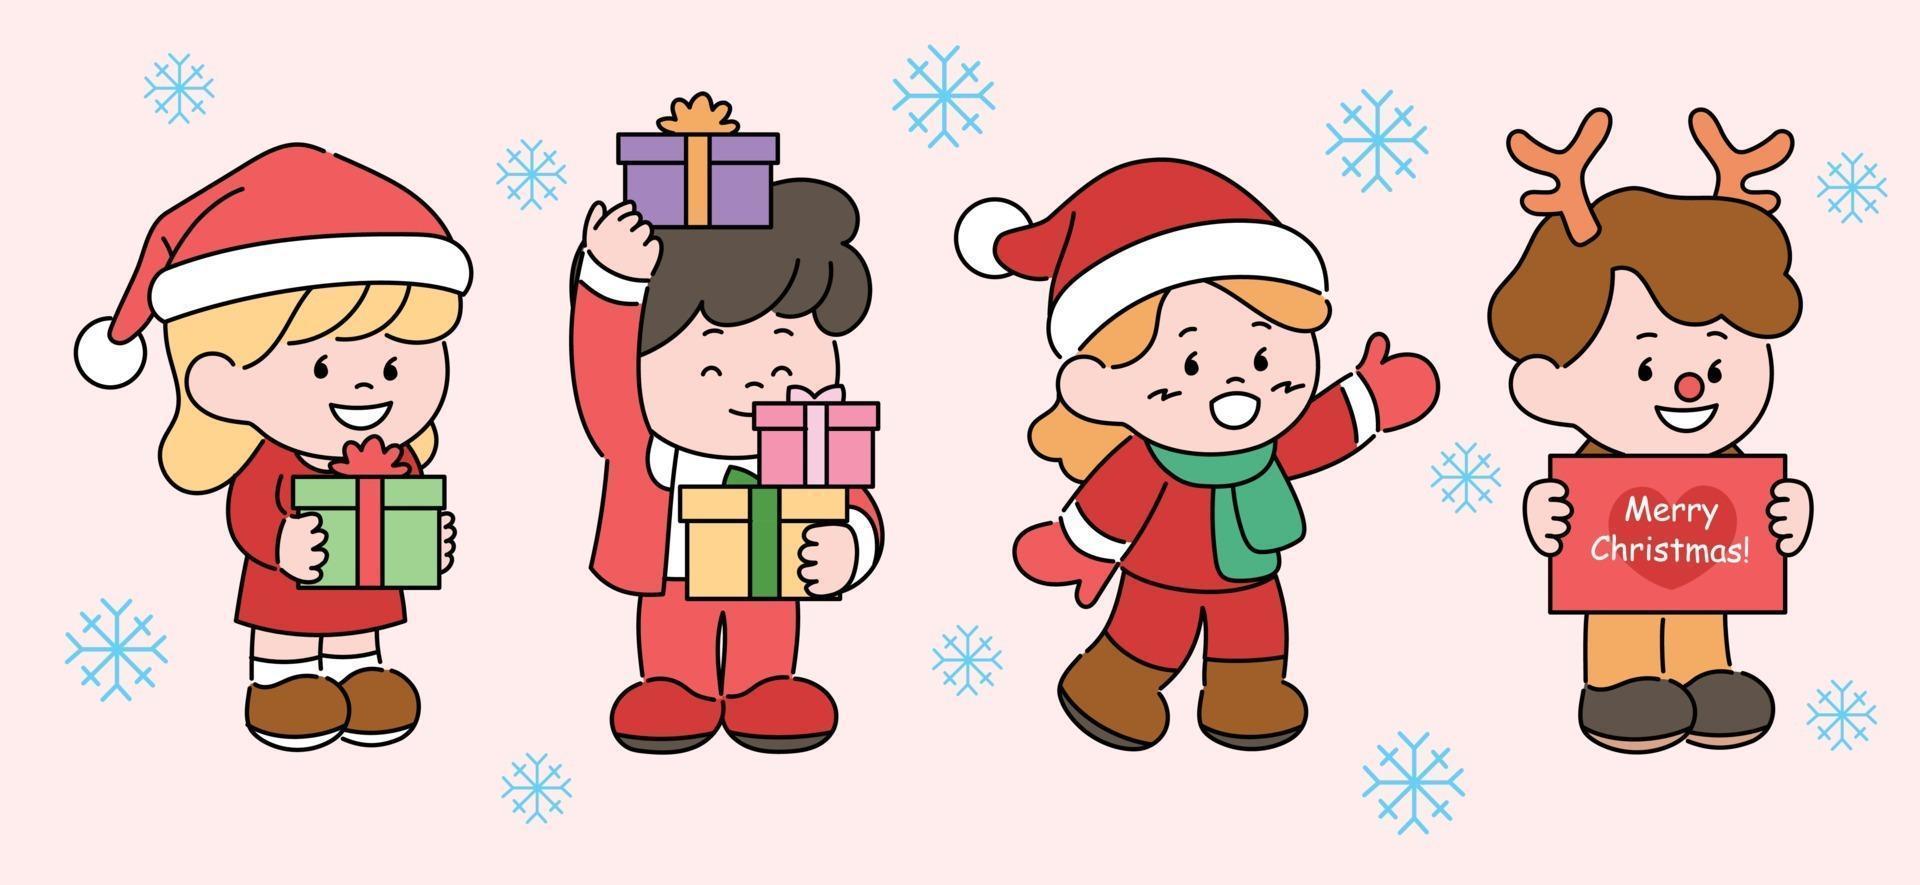 simpatici personaggi con cappelli di Babbo Natale e corna di renna tengono in mano scatole regalo. illustrazioni di disegno vettoriale stile disegnato a mano.